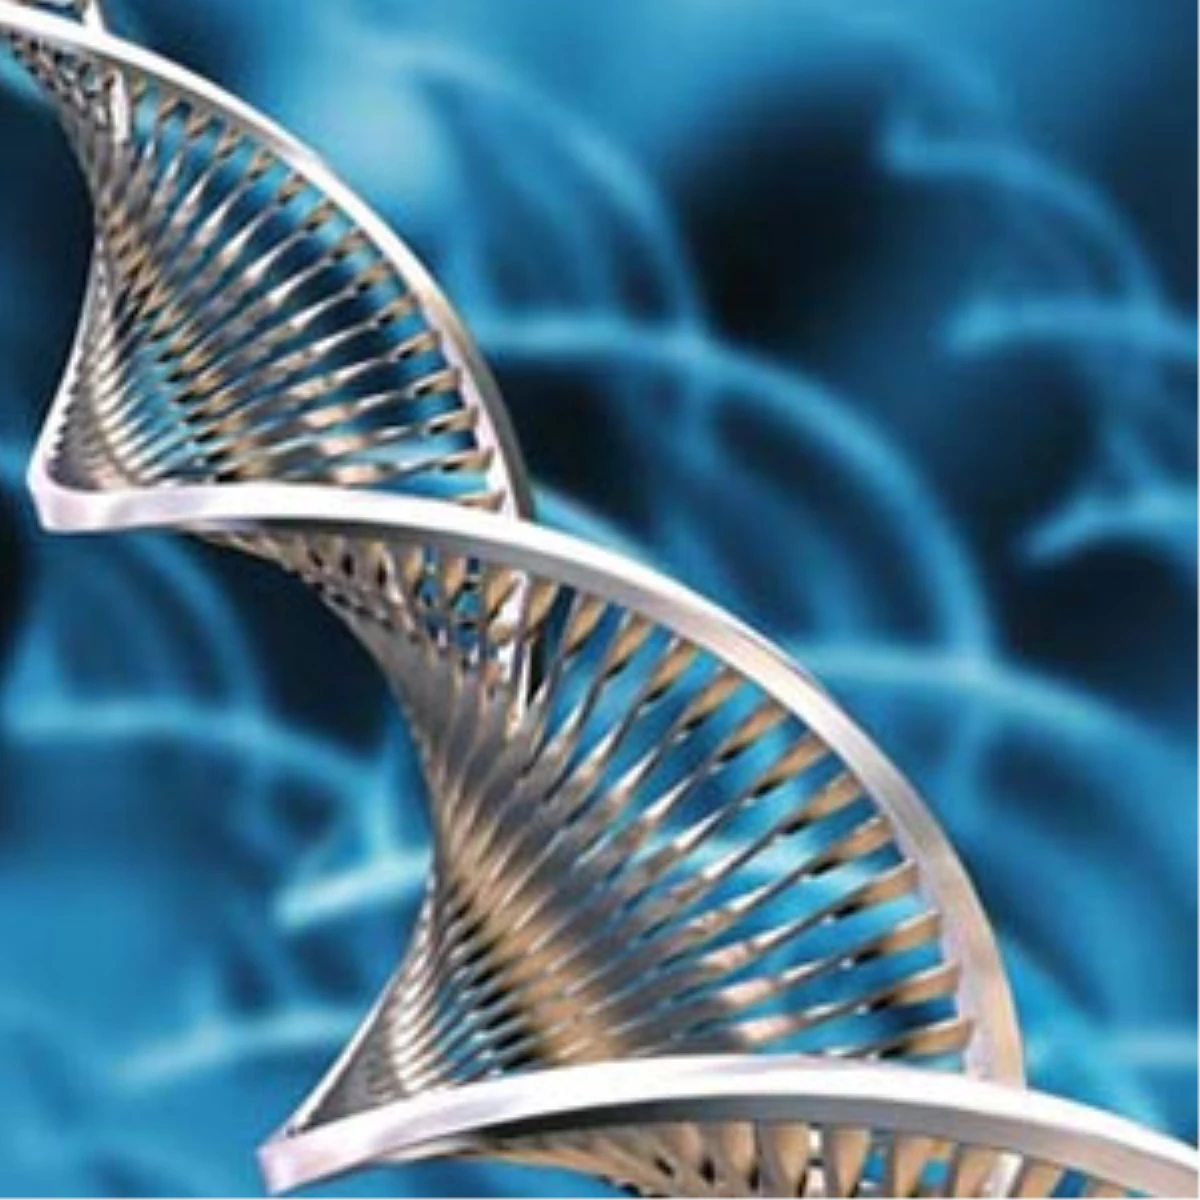 Gen Haritası, Hastalık Riskini "Önceden Belirlemeyi" Sağlamıyor